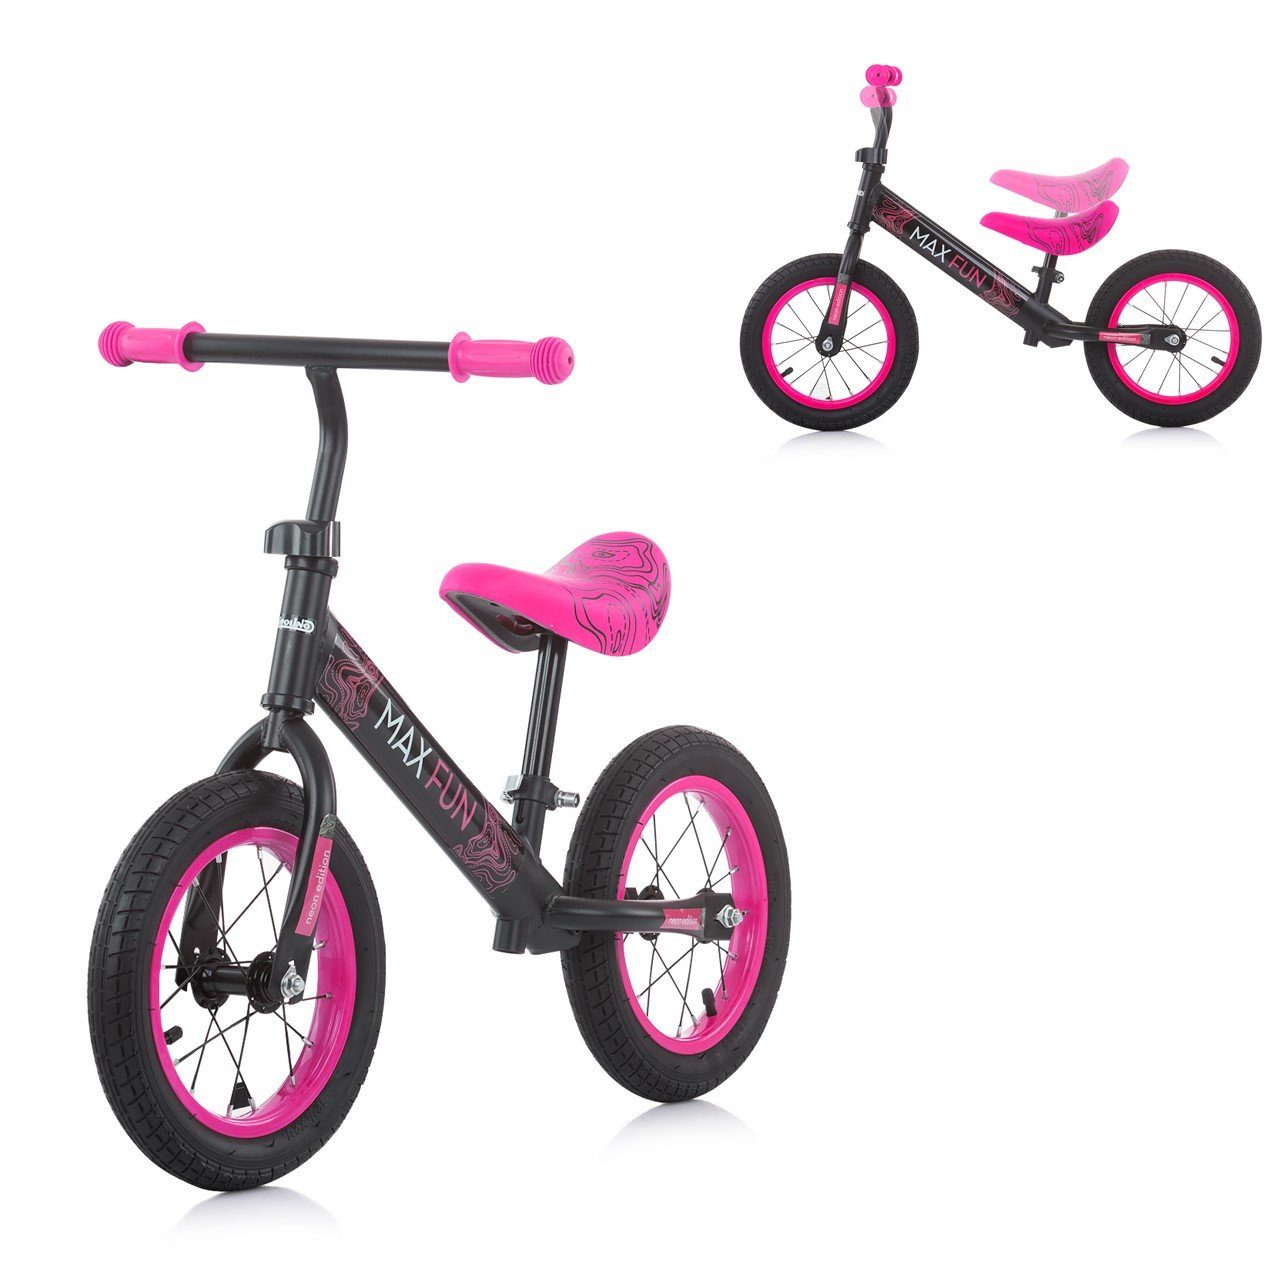 Chipolino Laufrad Laufrad Max Fun 12 Zoll (30,48 cm) Zoll, Lufträder, Sitz verstellbar, Neon-Design, Gummigriffe pink